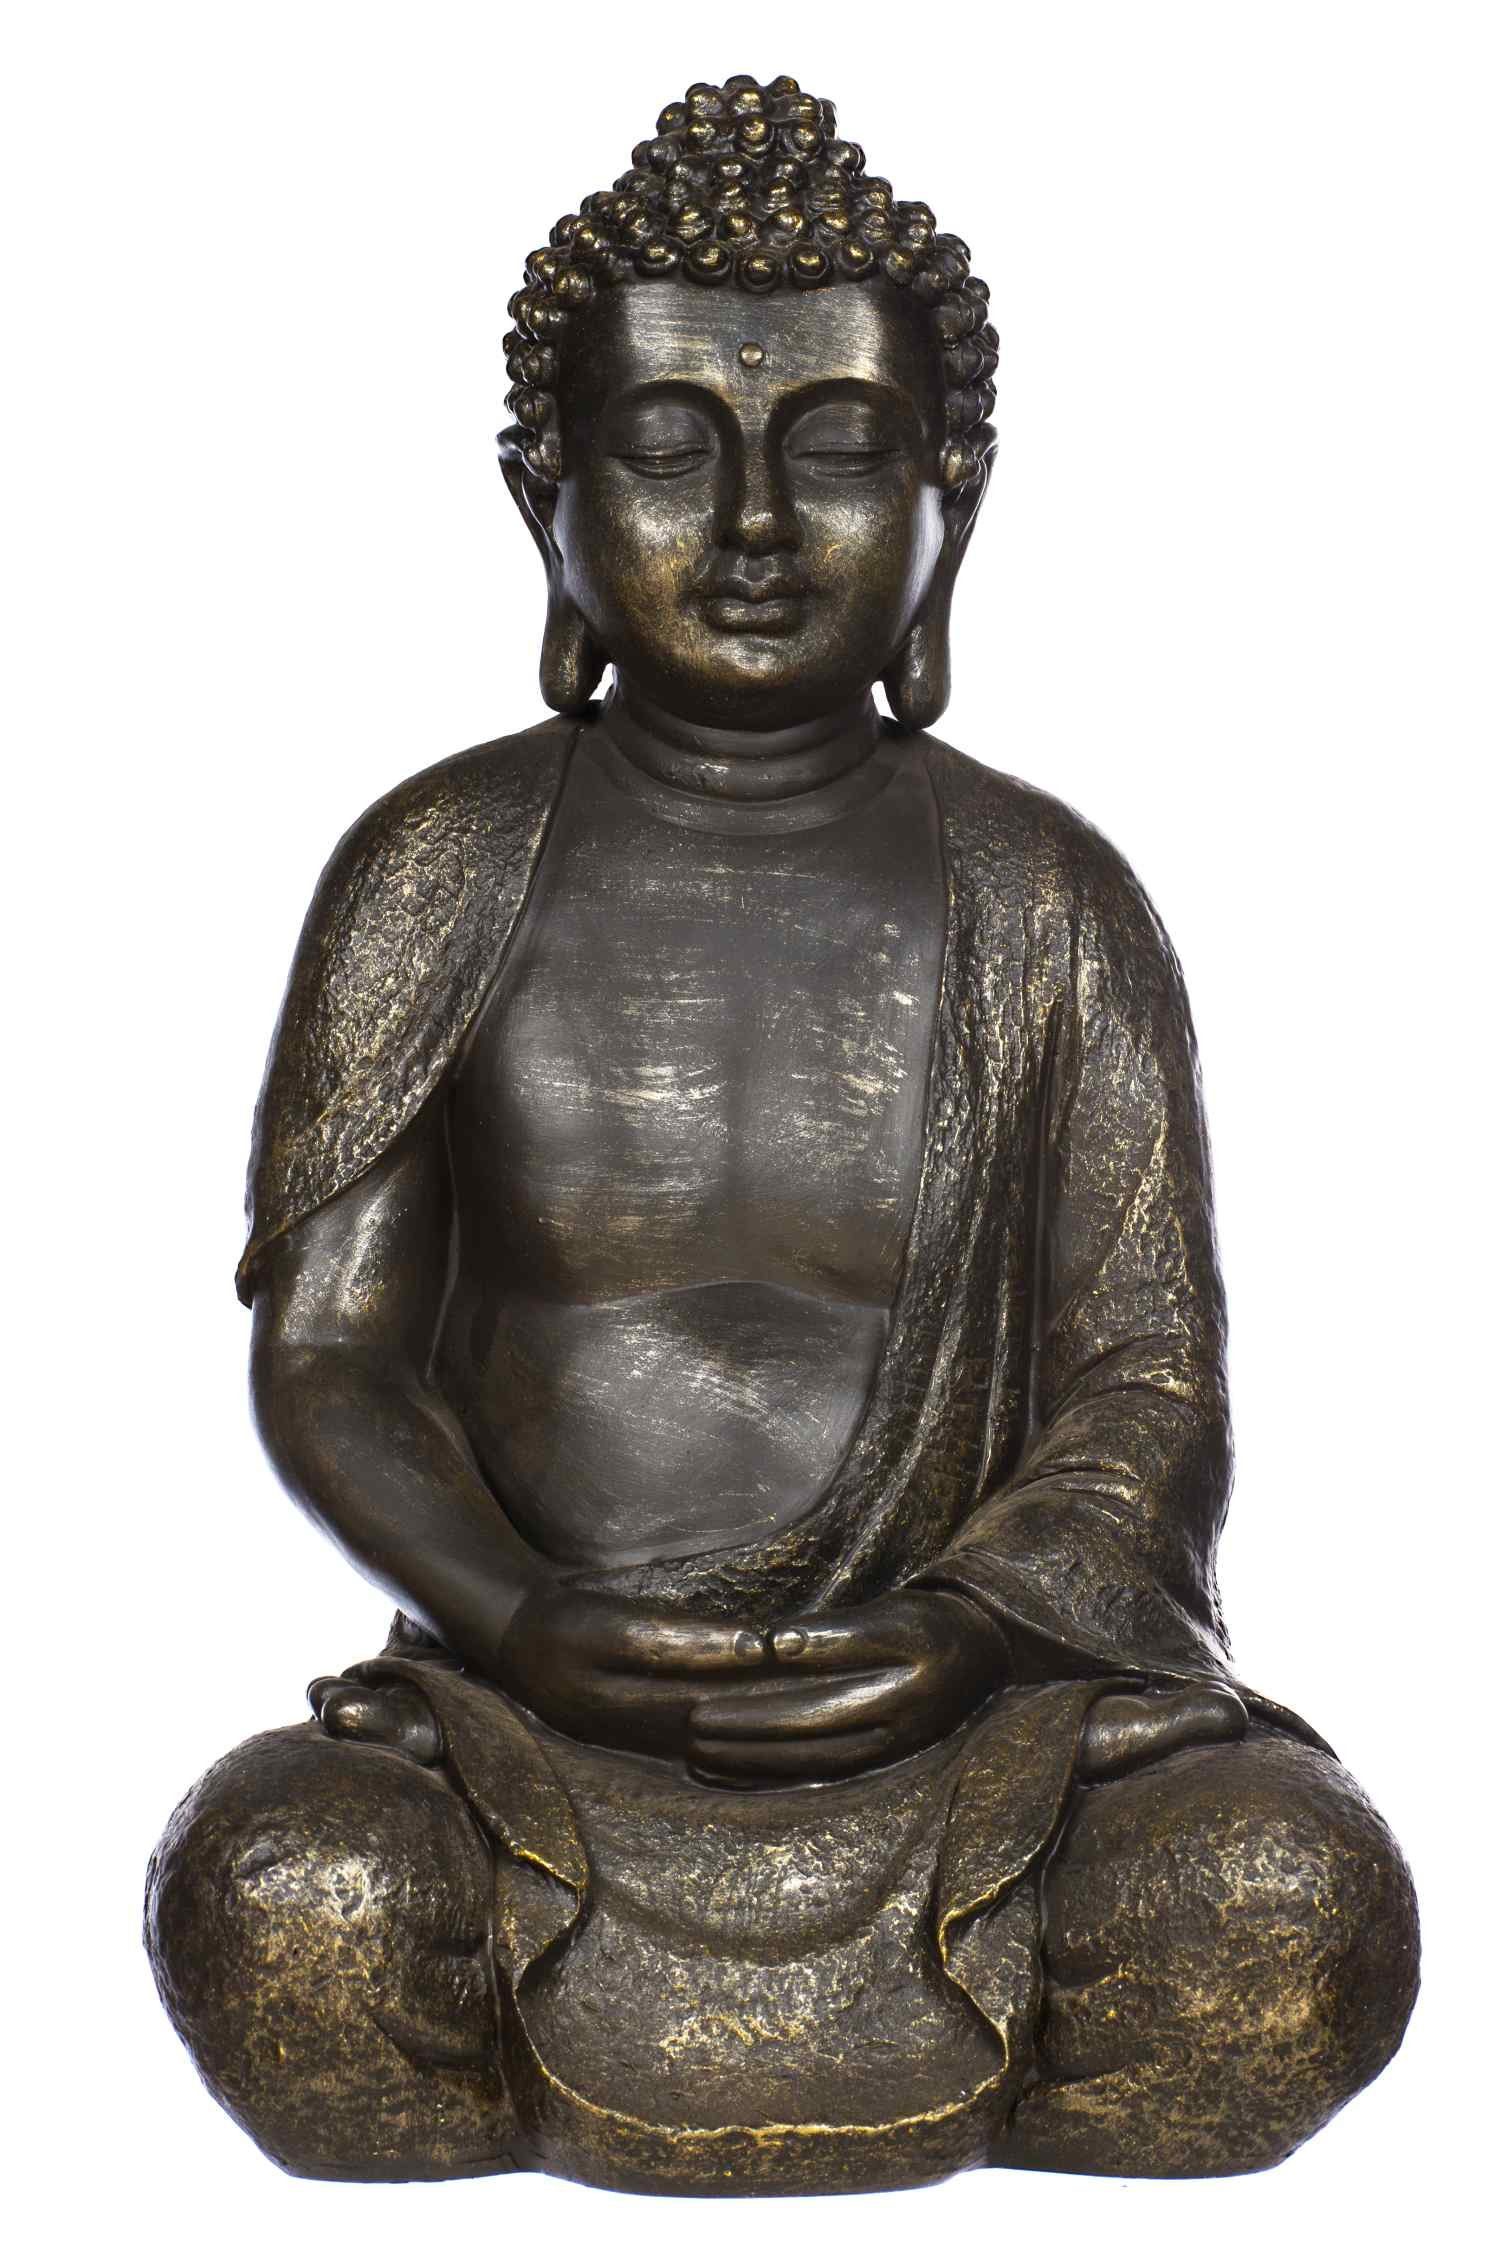 BIRENDY Buddhafigur Buddha NF13106 Bronze Figur XL44cm hoch Statue groß Büste feine Strukturen | Dekofiguren